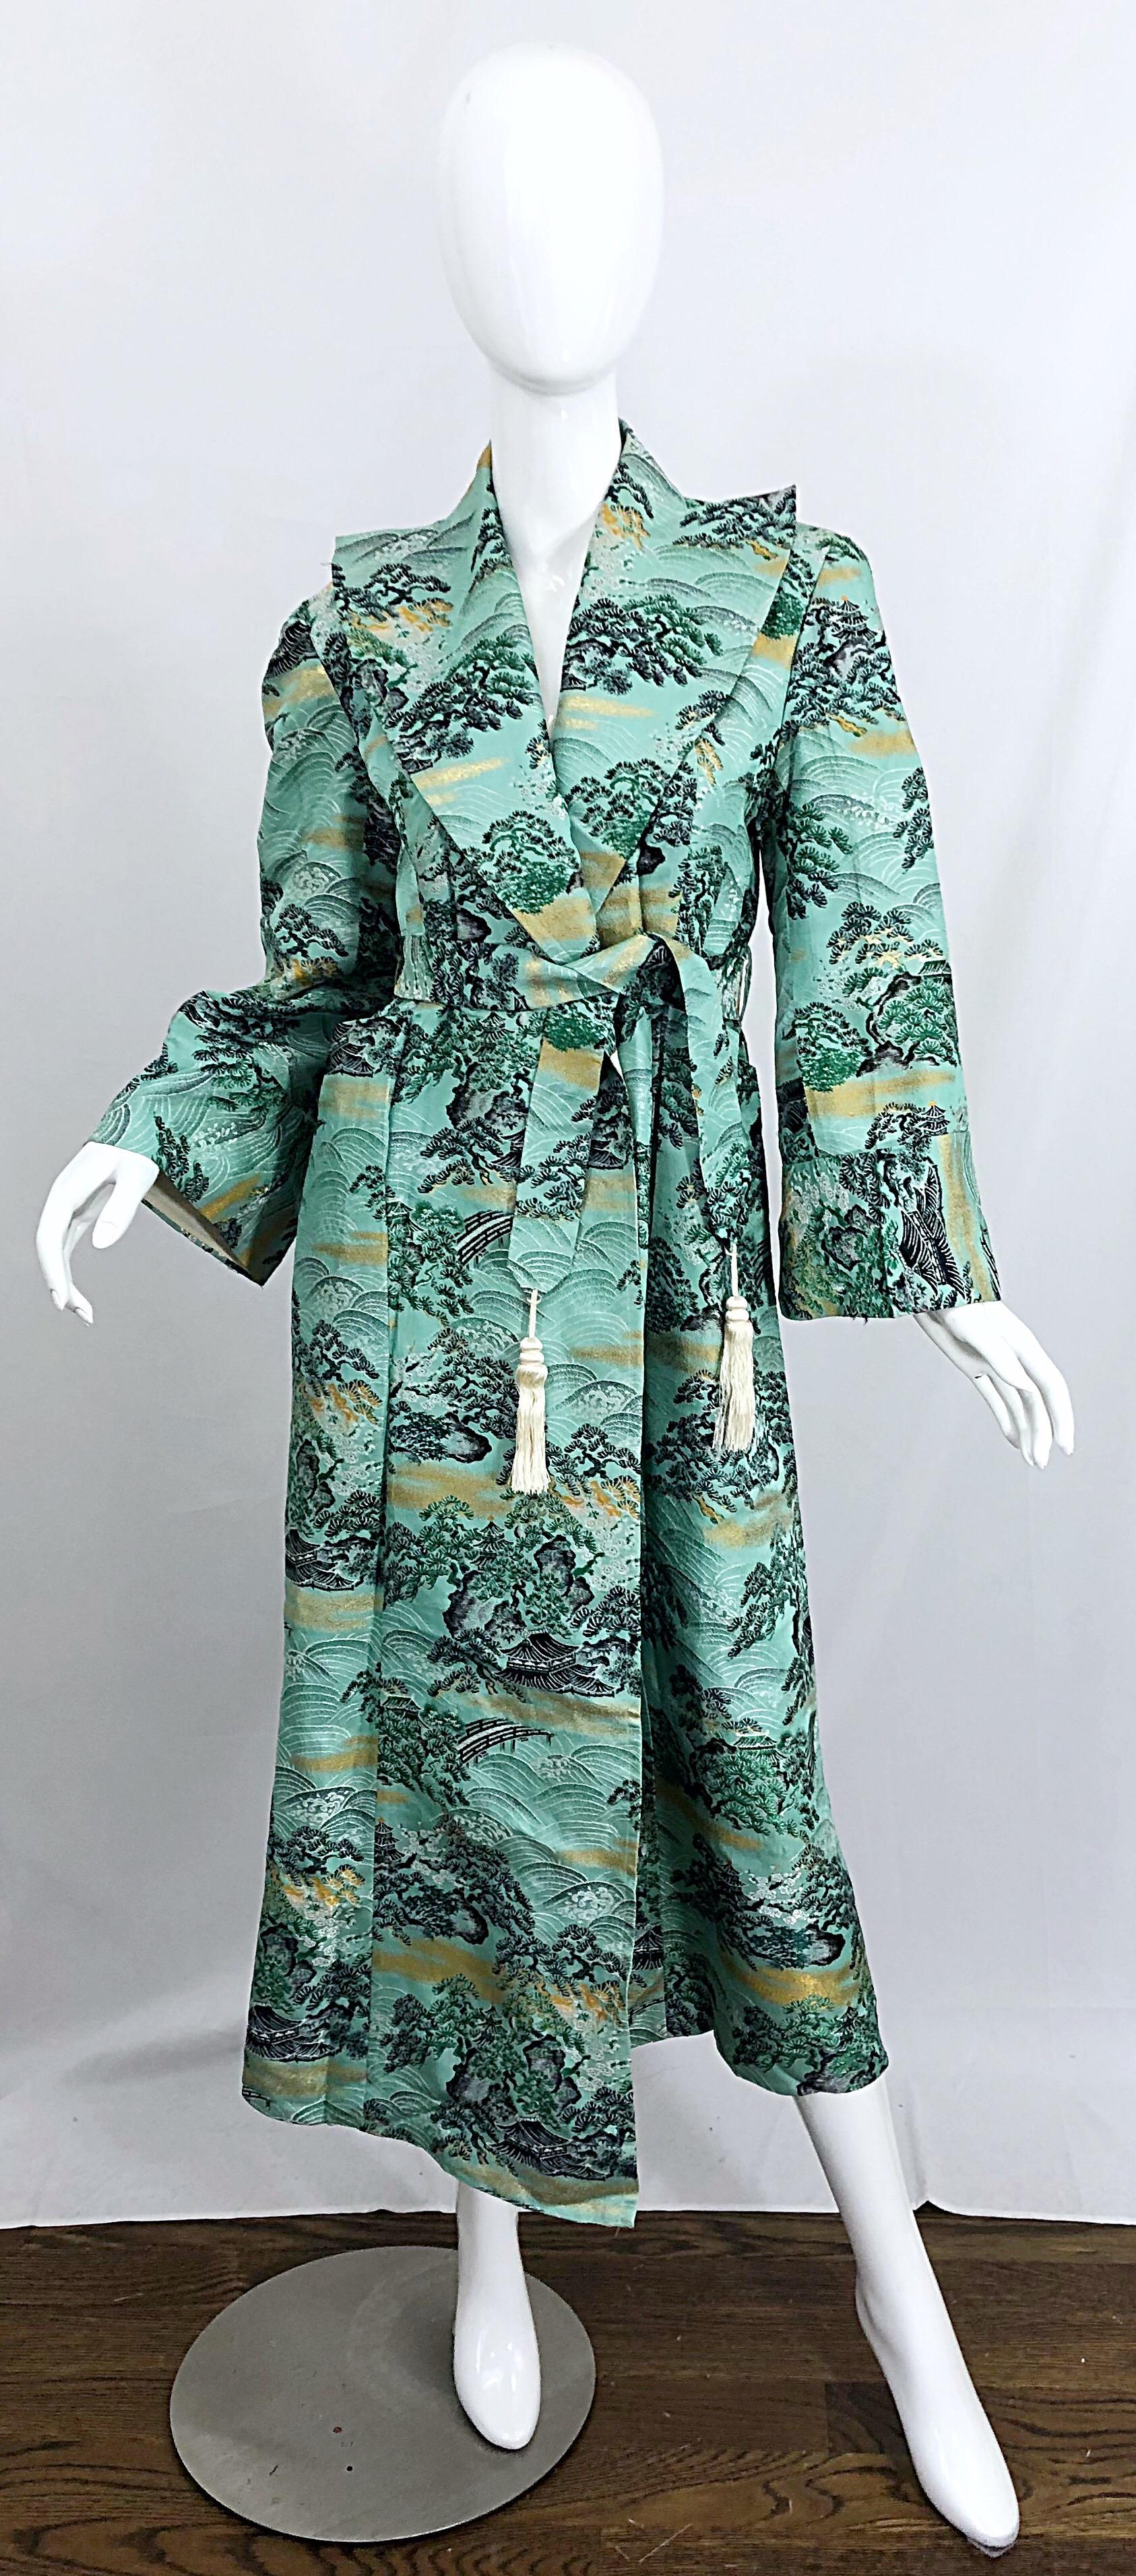 Superbe veste en brocart de soie FUJIBAYASHI bleu, vert et or des années 1940 ! Des arbres et des paysages / montagnes sont imprimés partout. La ceinture à franges détachable rend cette veste facile à porter par plusieurs tailles. Silhouette trench